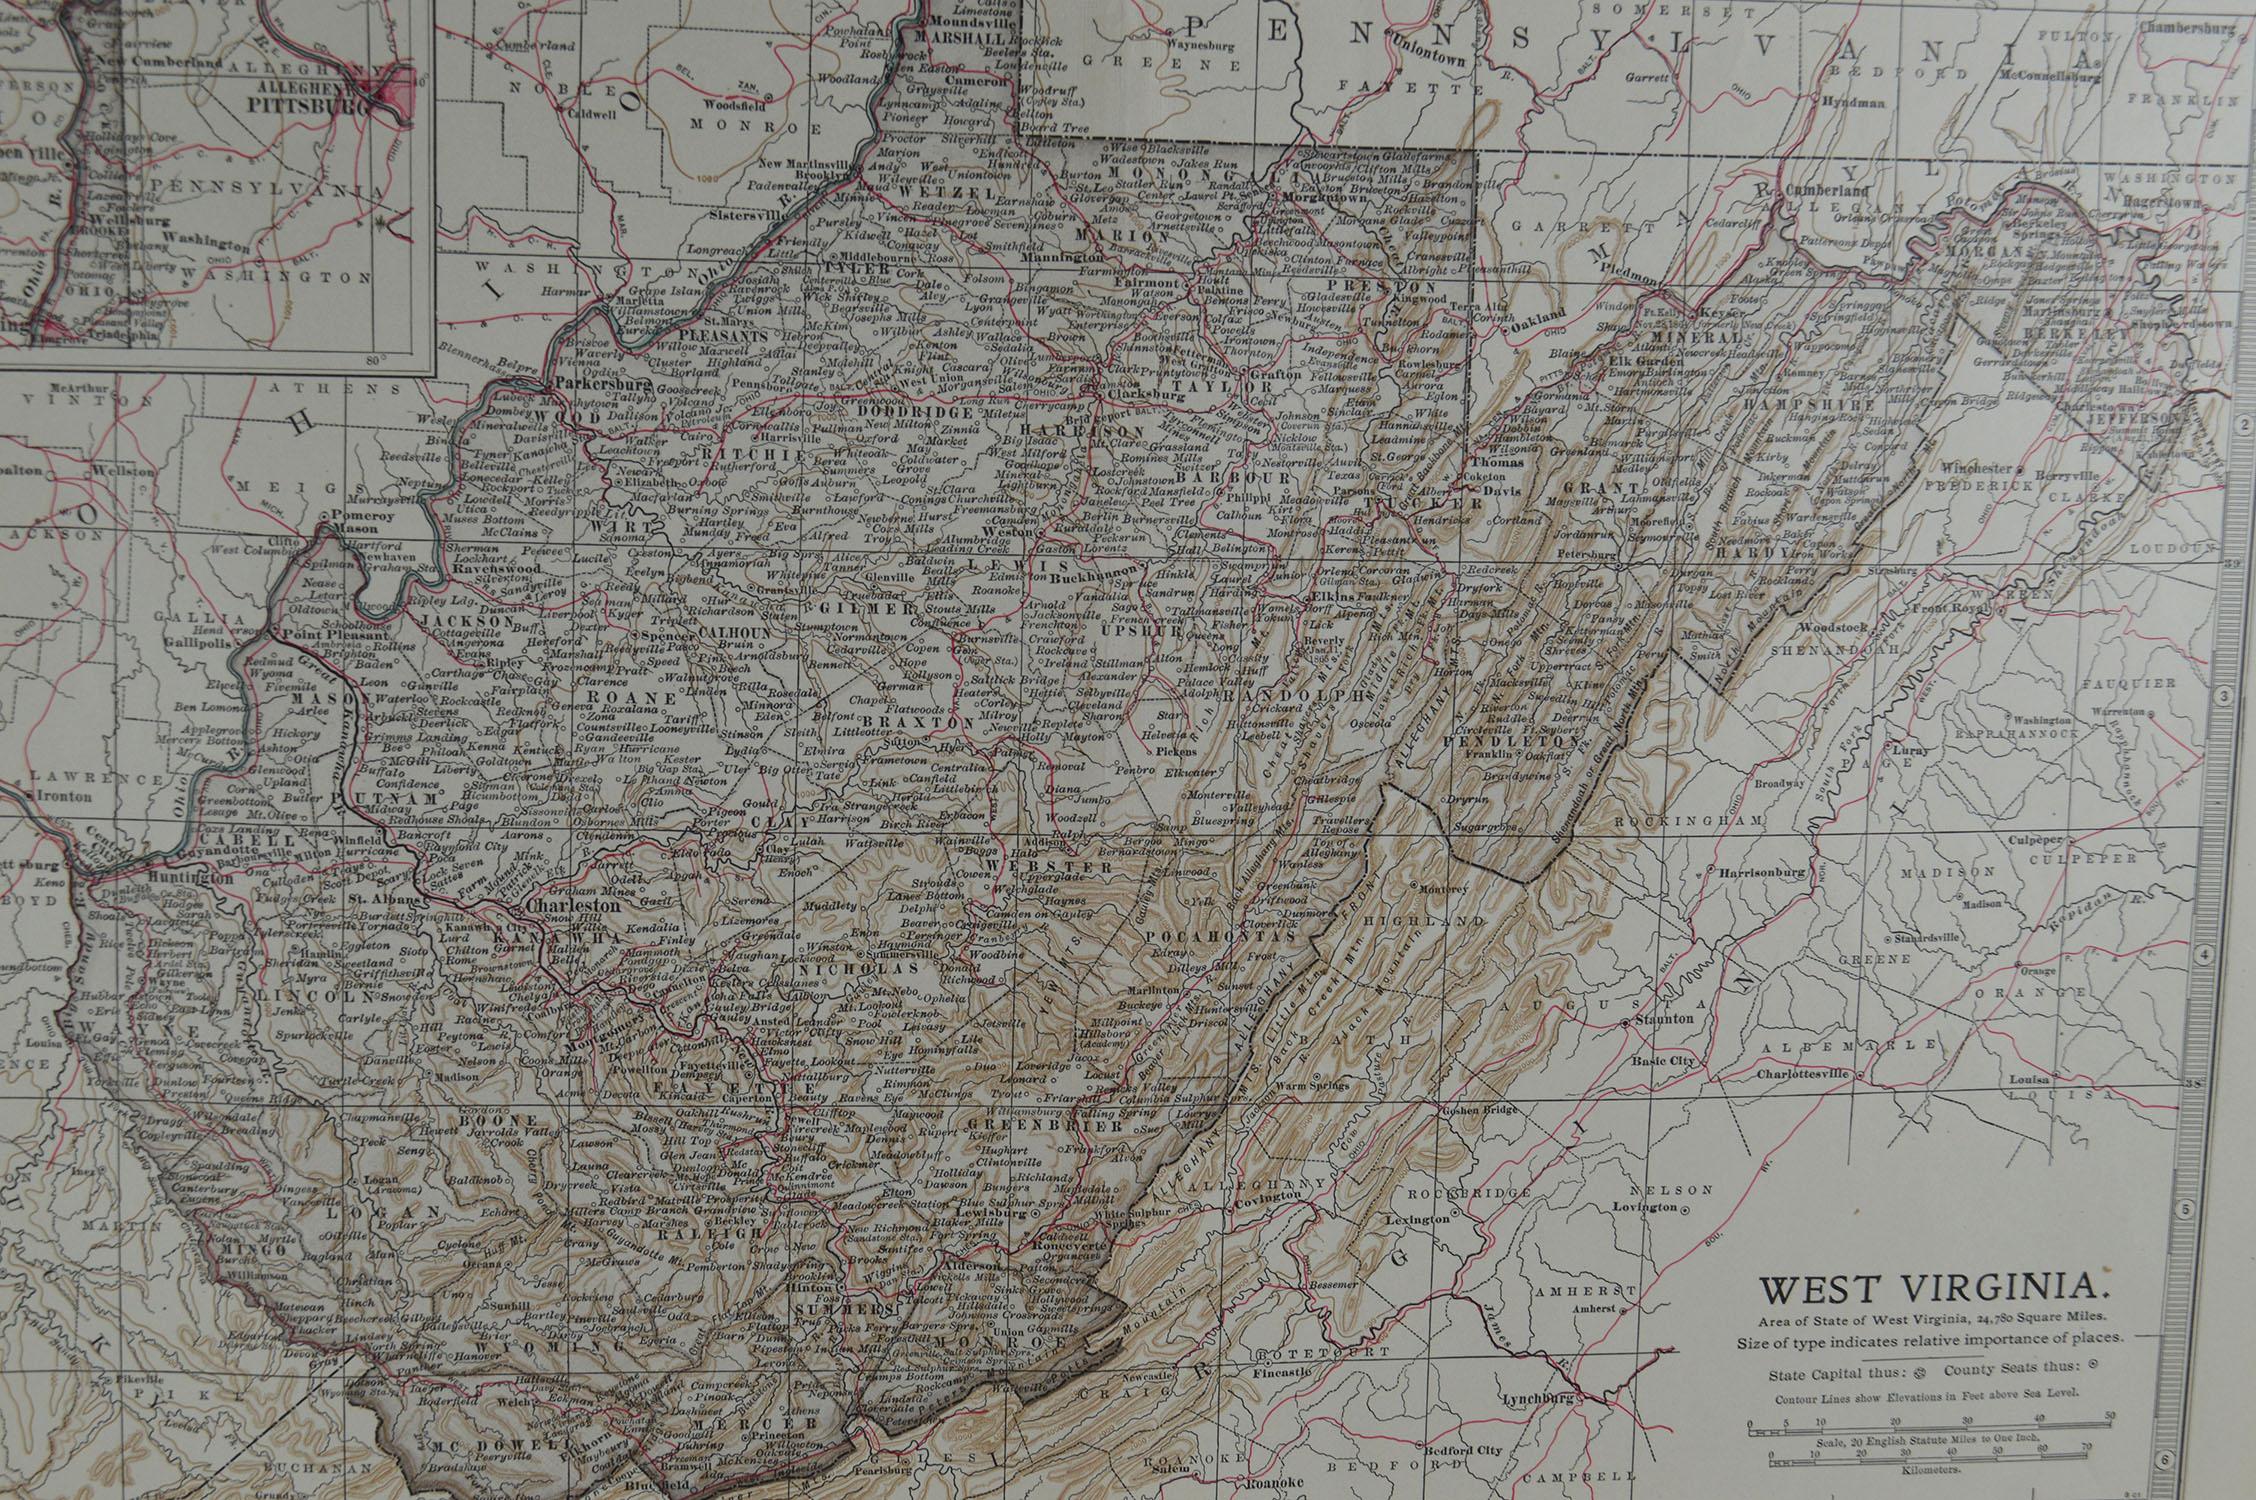 Other Original Antique Map of West Virginia, circa 1890